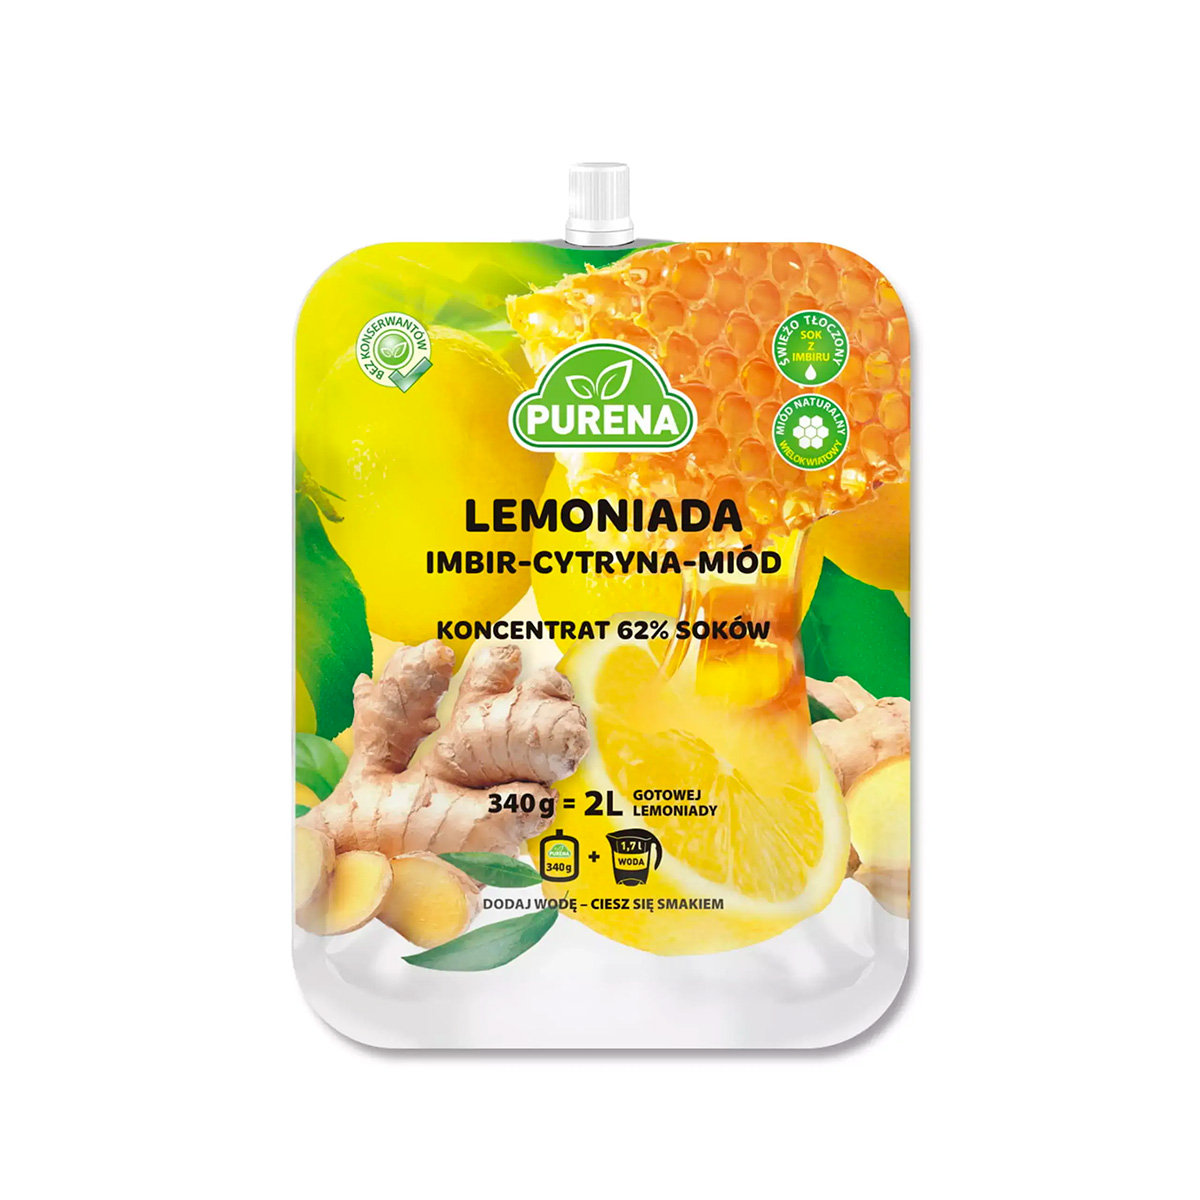 Purena Lemoniada imbir - cytryna - miód, koncentrat Pure